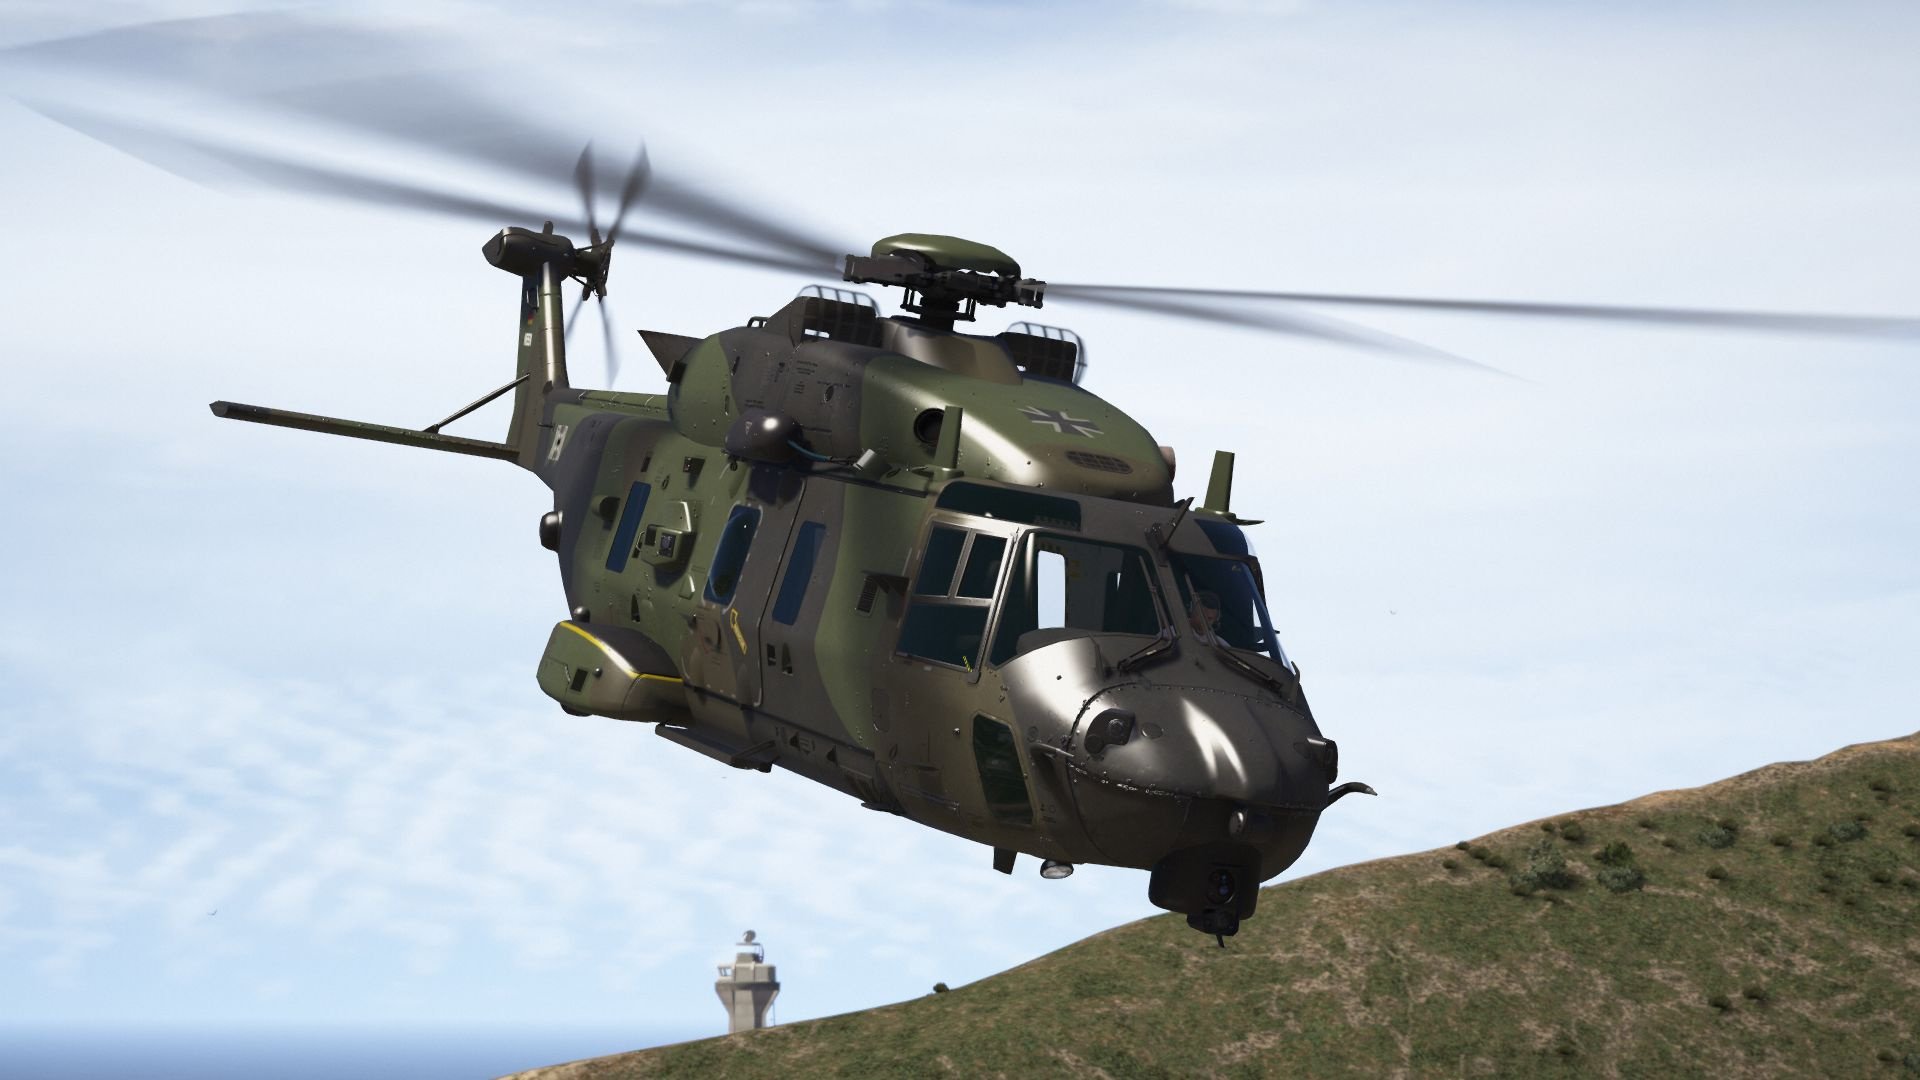 GTA 5 helicópteros - lista de todos os helicópteros do GTA V